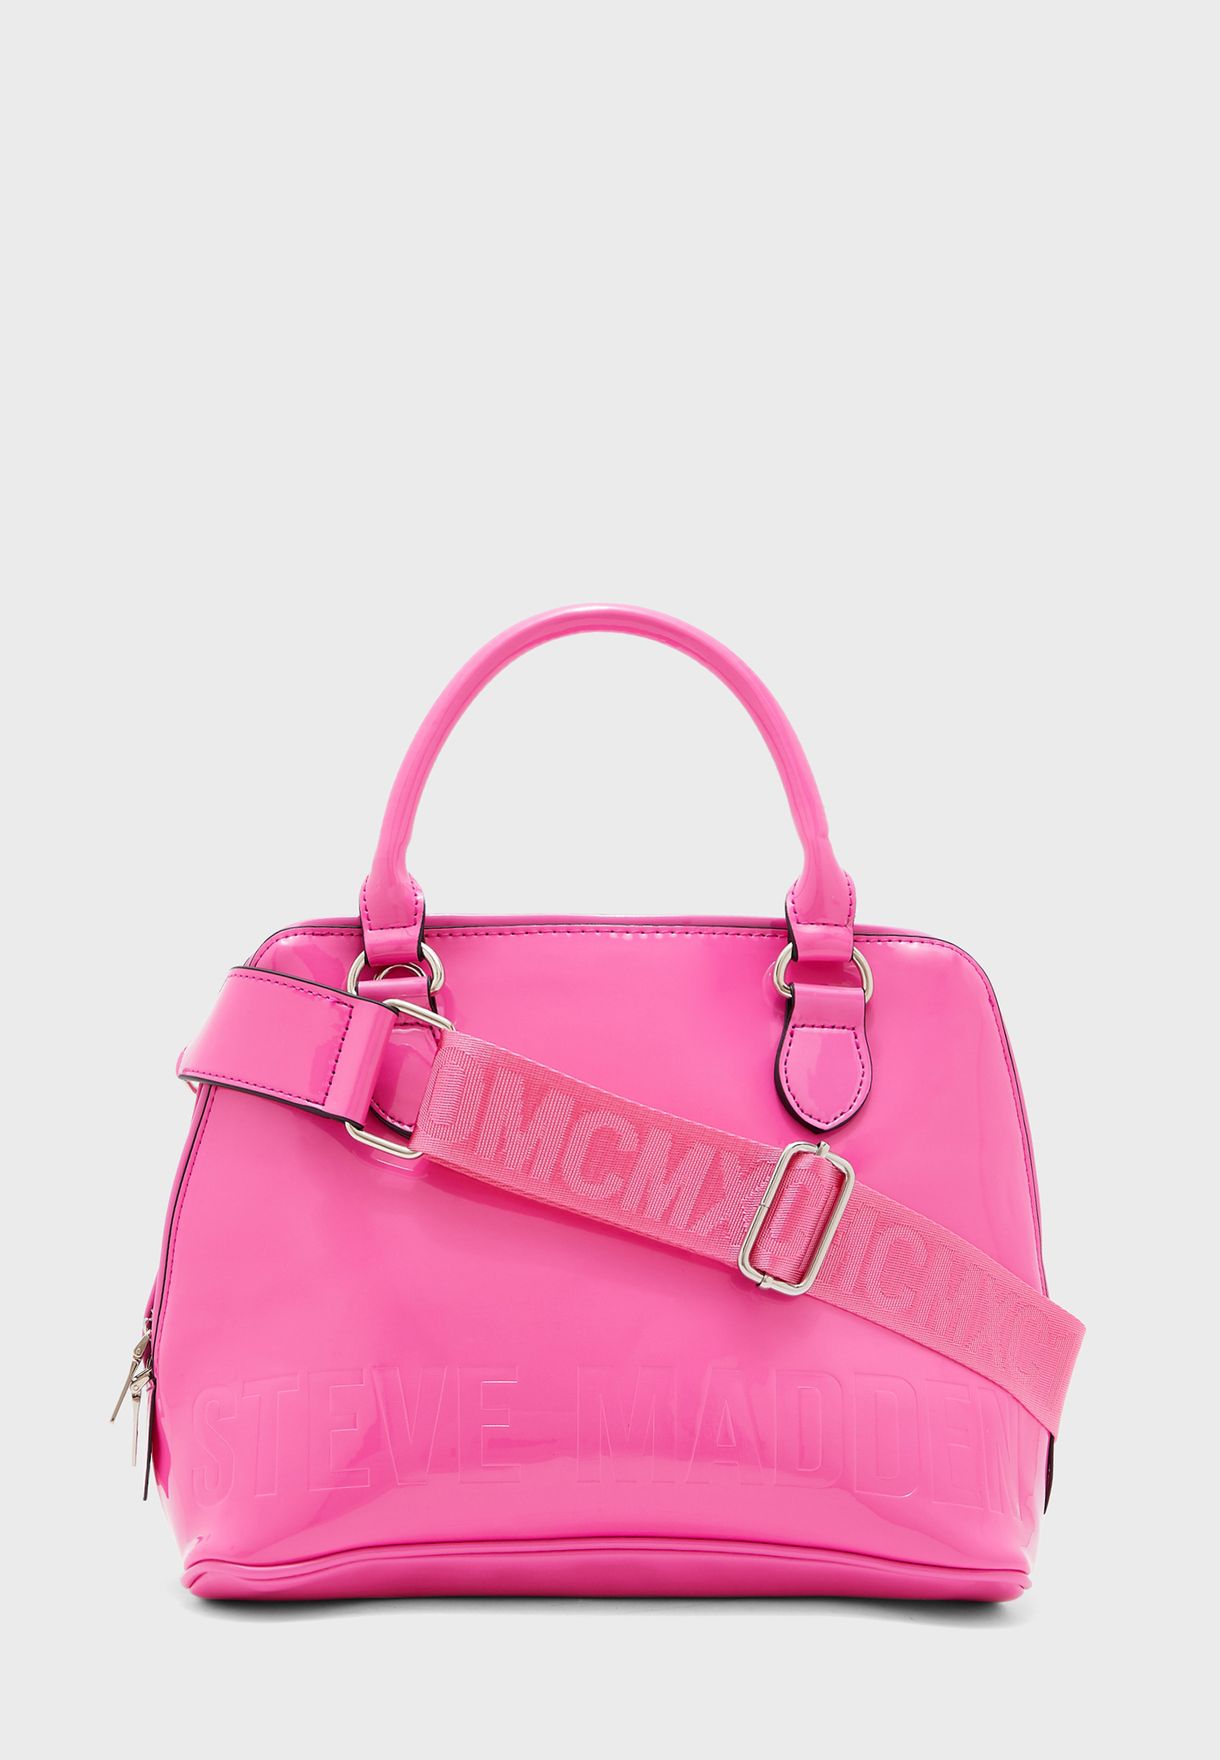 steve madden hot pink purse